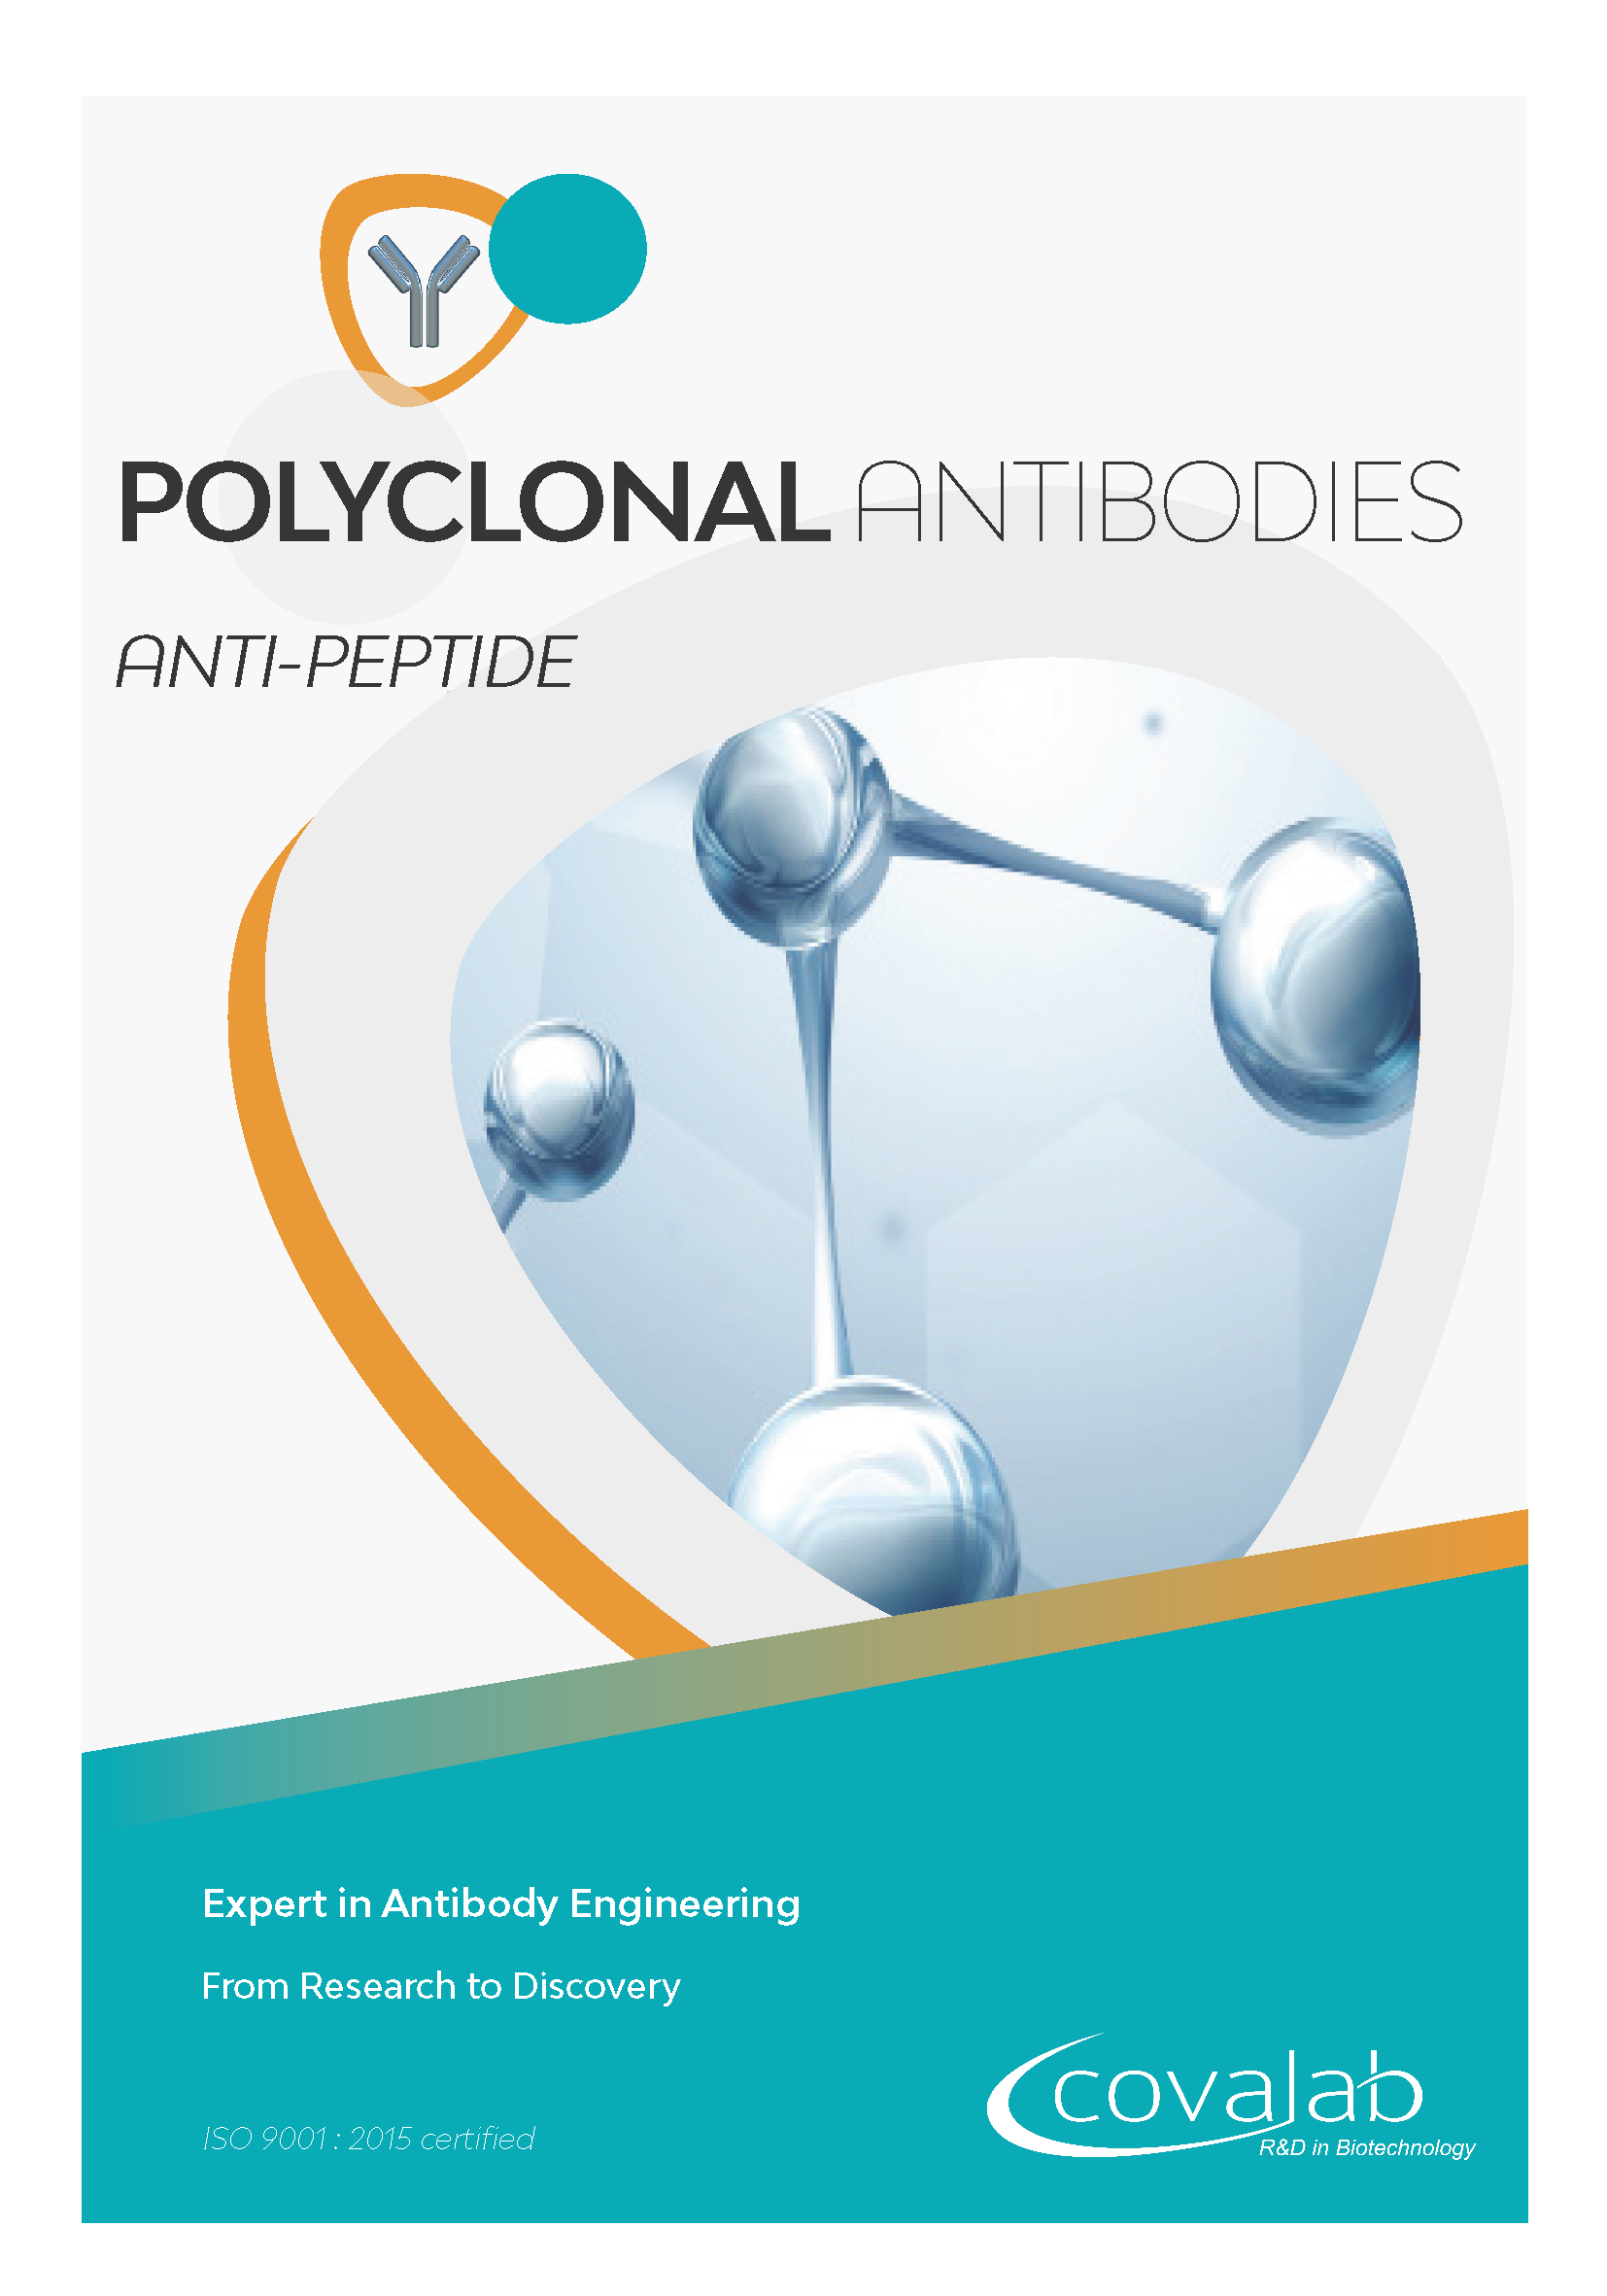 Custom anti-peptide polyclonal antibodies